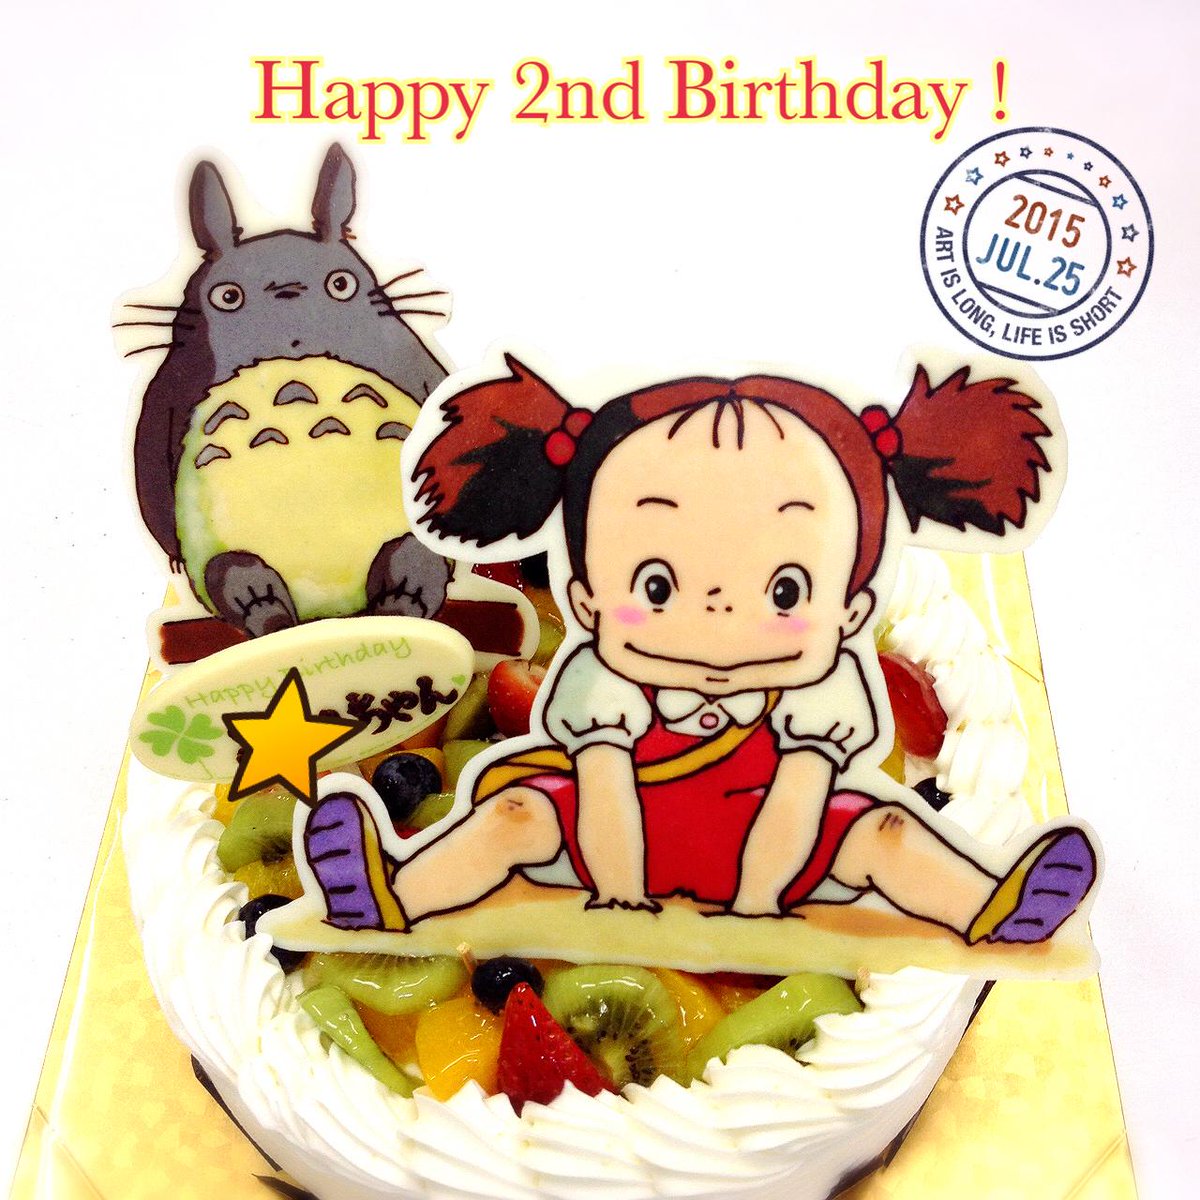 キャラデコ職人 Twitterren トトロとめいちゃんのイラストケーキです 2歳のお誕生日おめでとうございます 楽しい1年になりますように Http T Co Ce186ujn9c Http T Co Gfs6r6inri